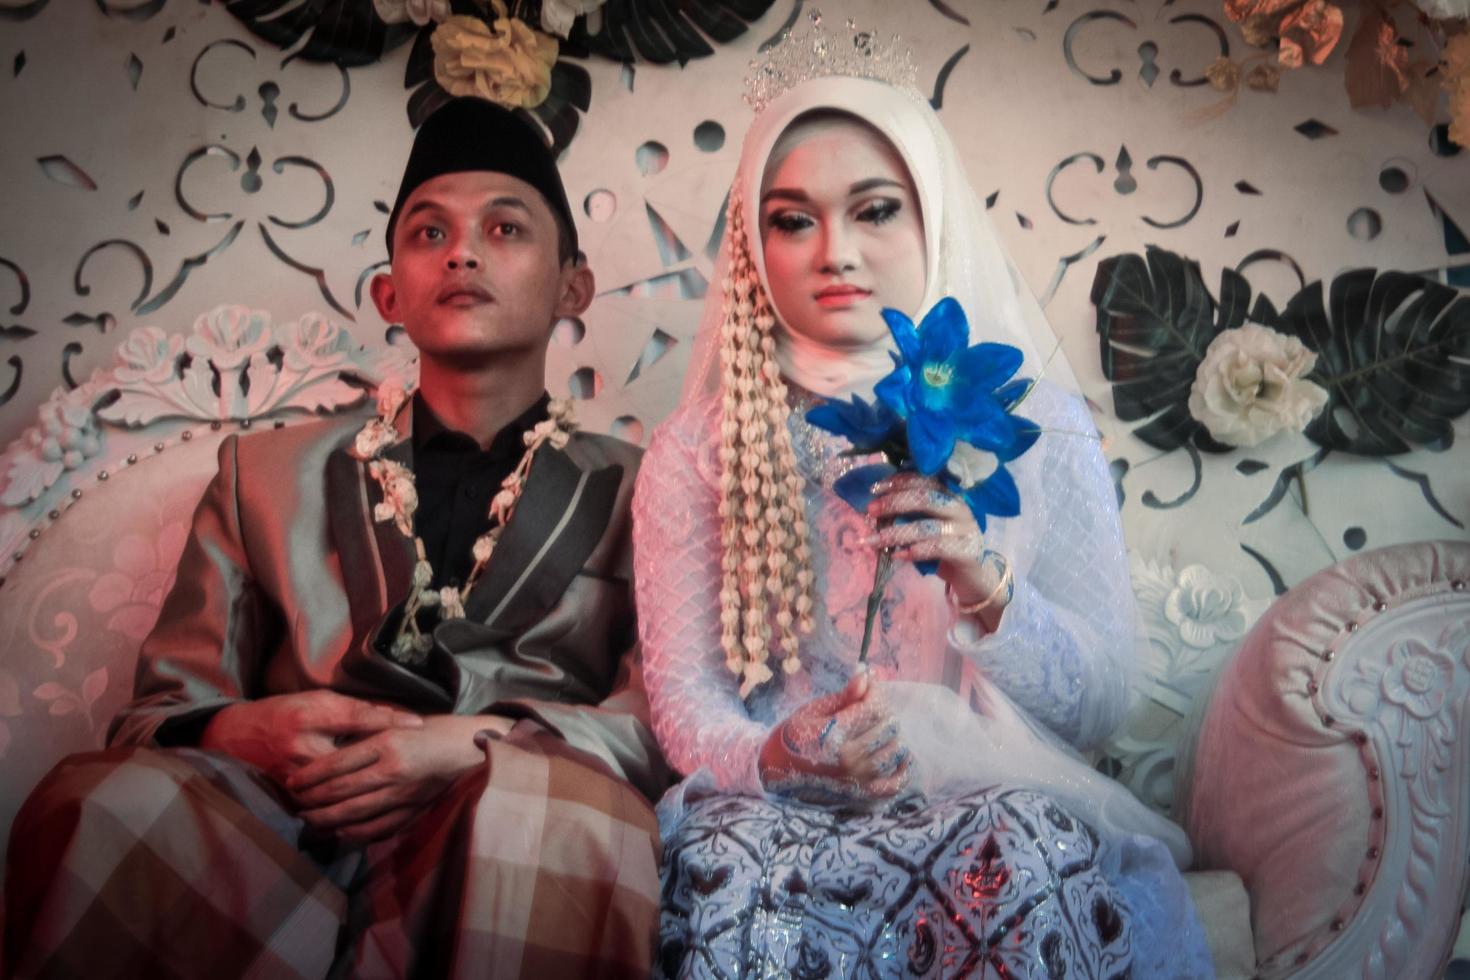 romantische Indonesische moslimbruid foto